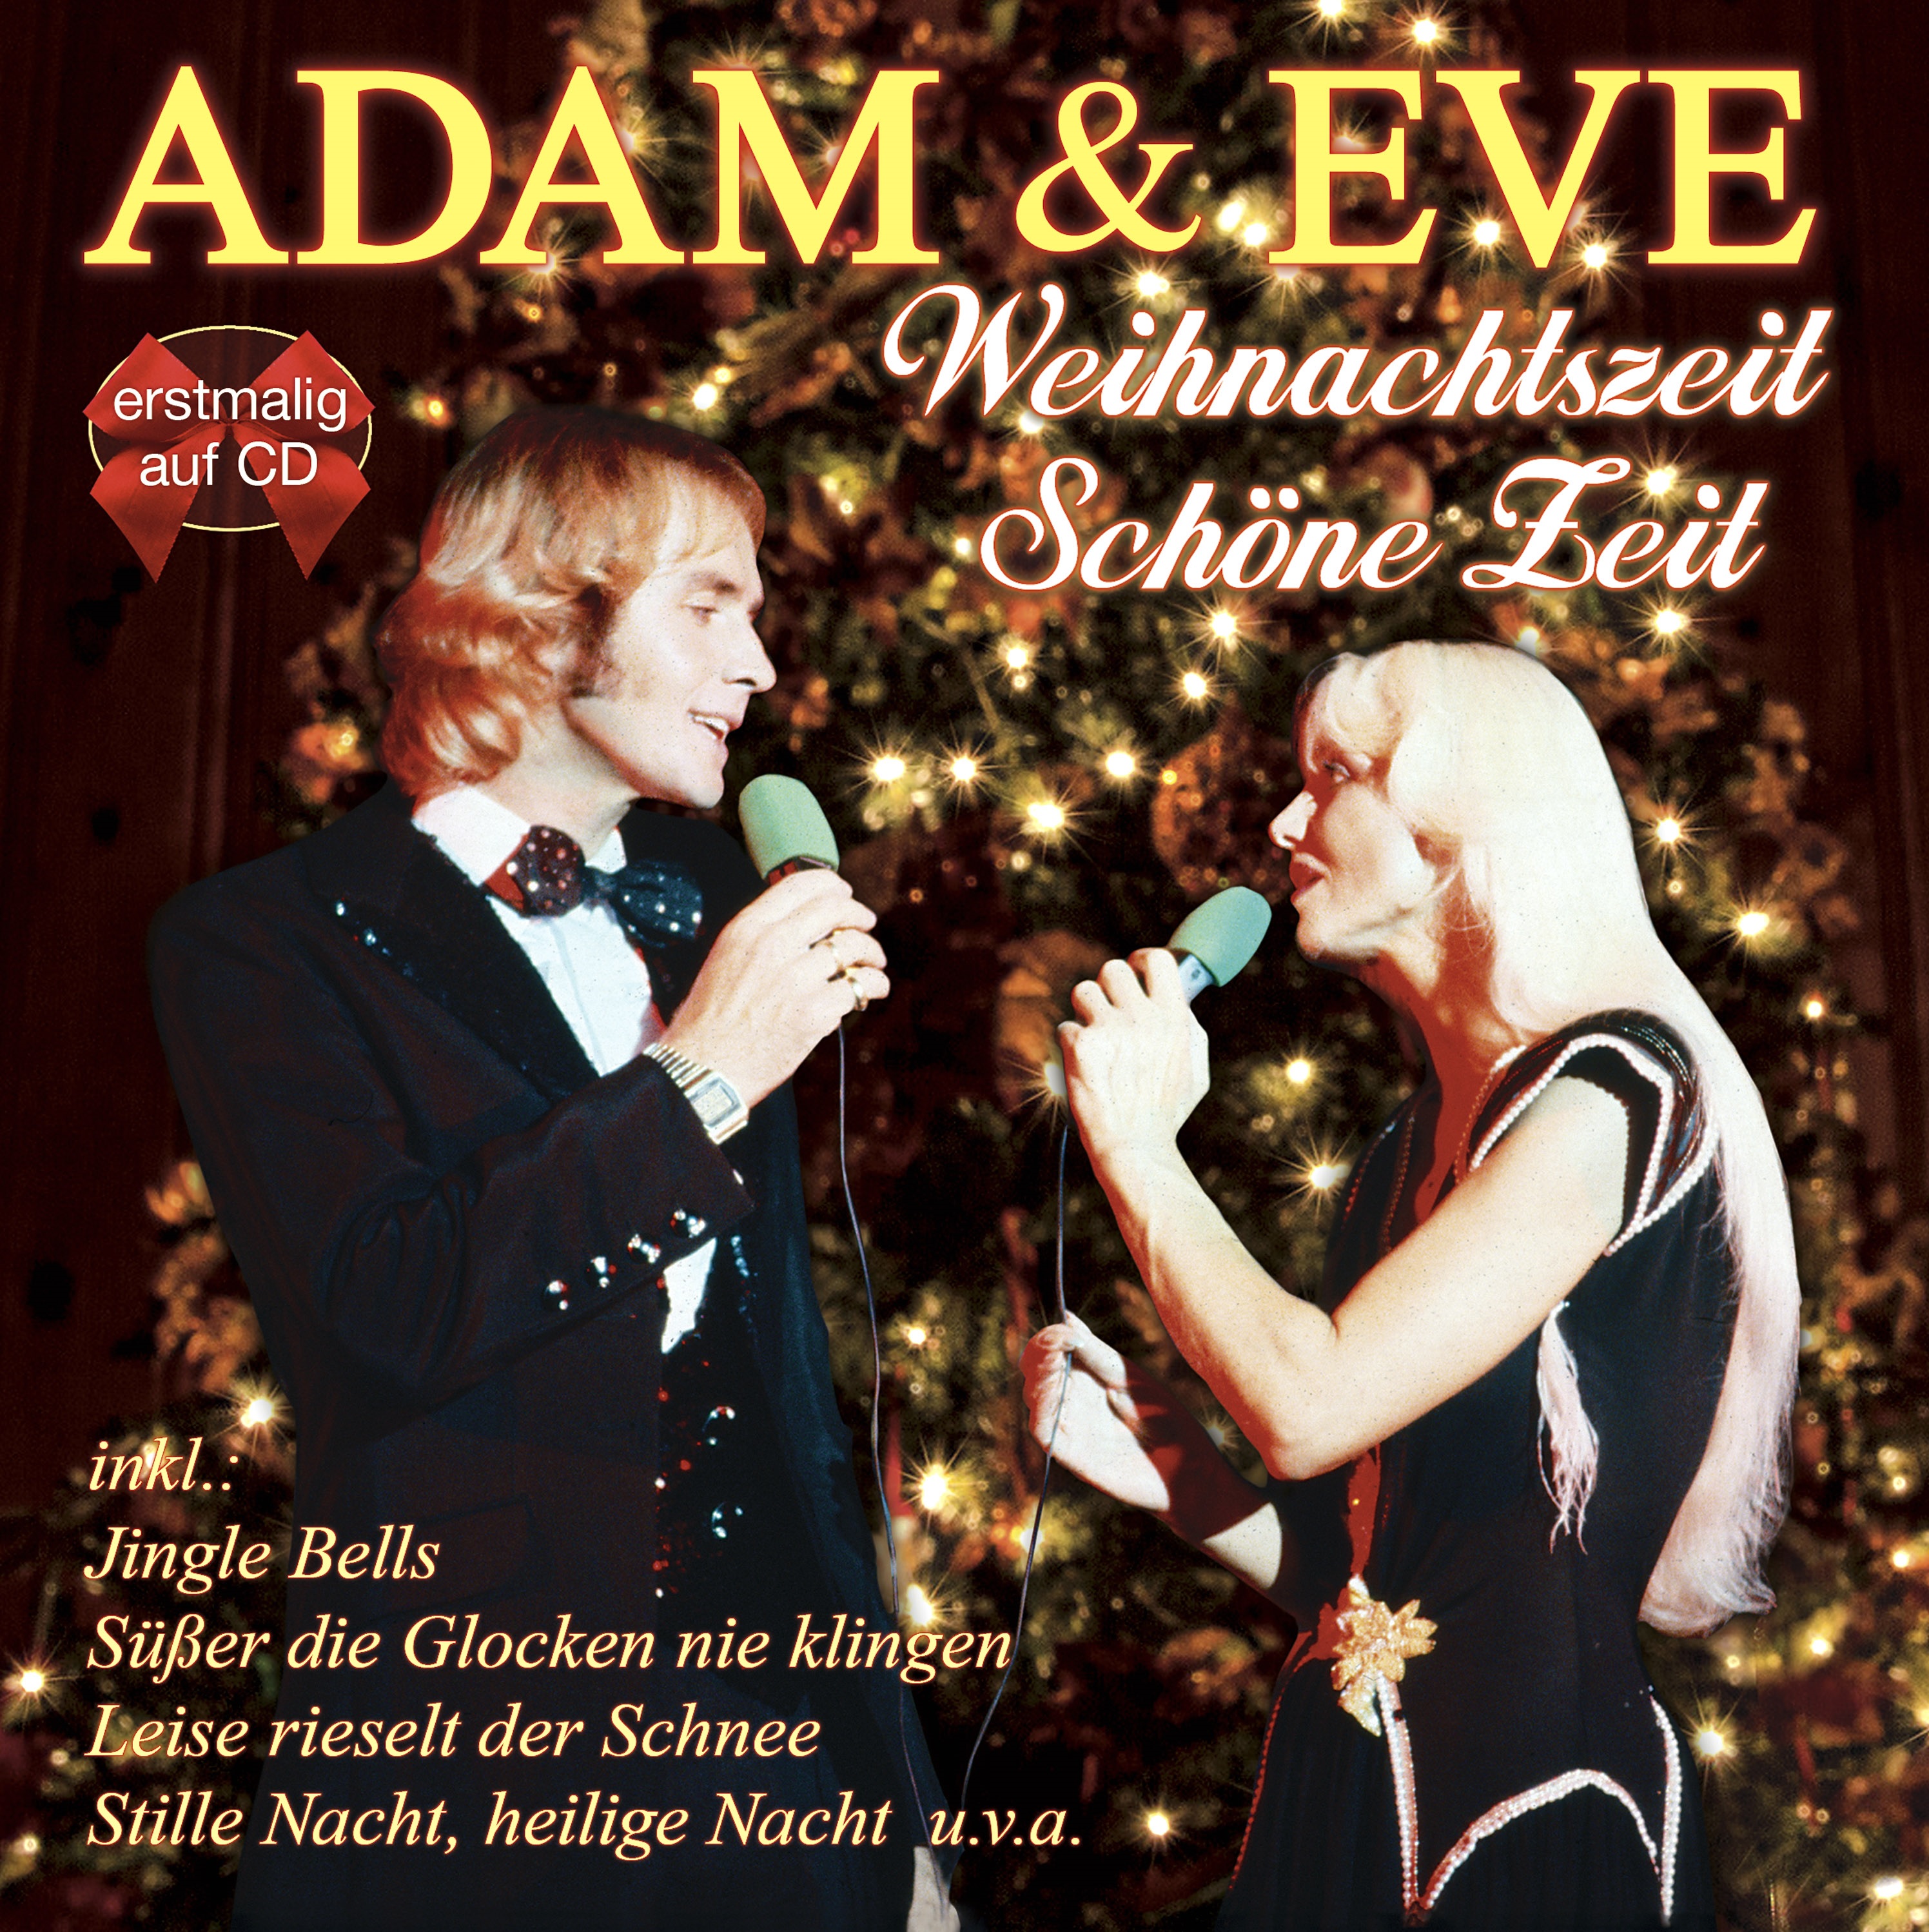 Adam & Eve - Weihnachtszeit - Schöne Zeit